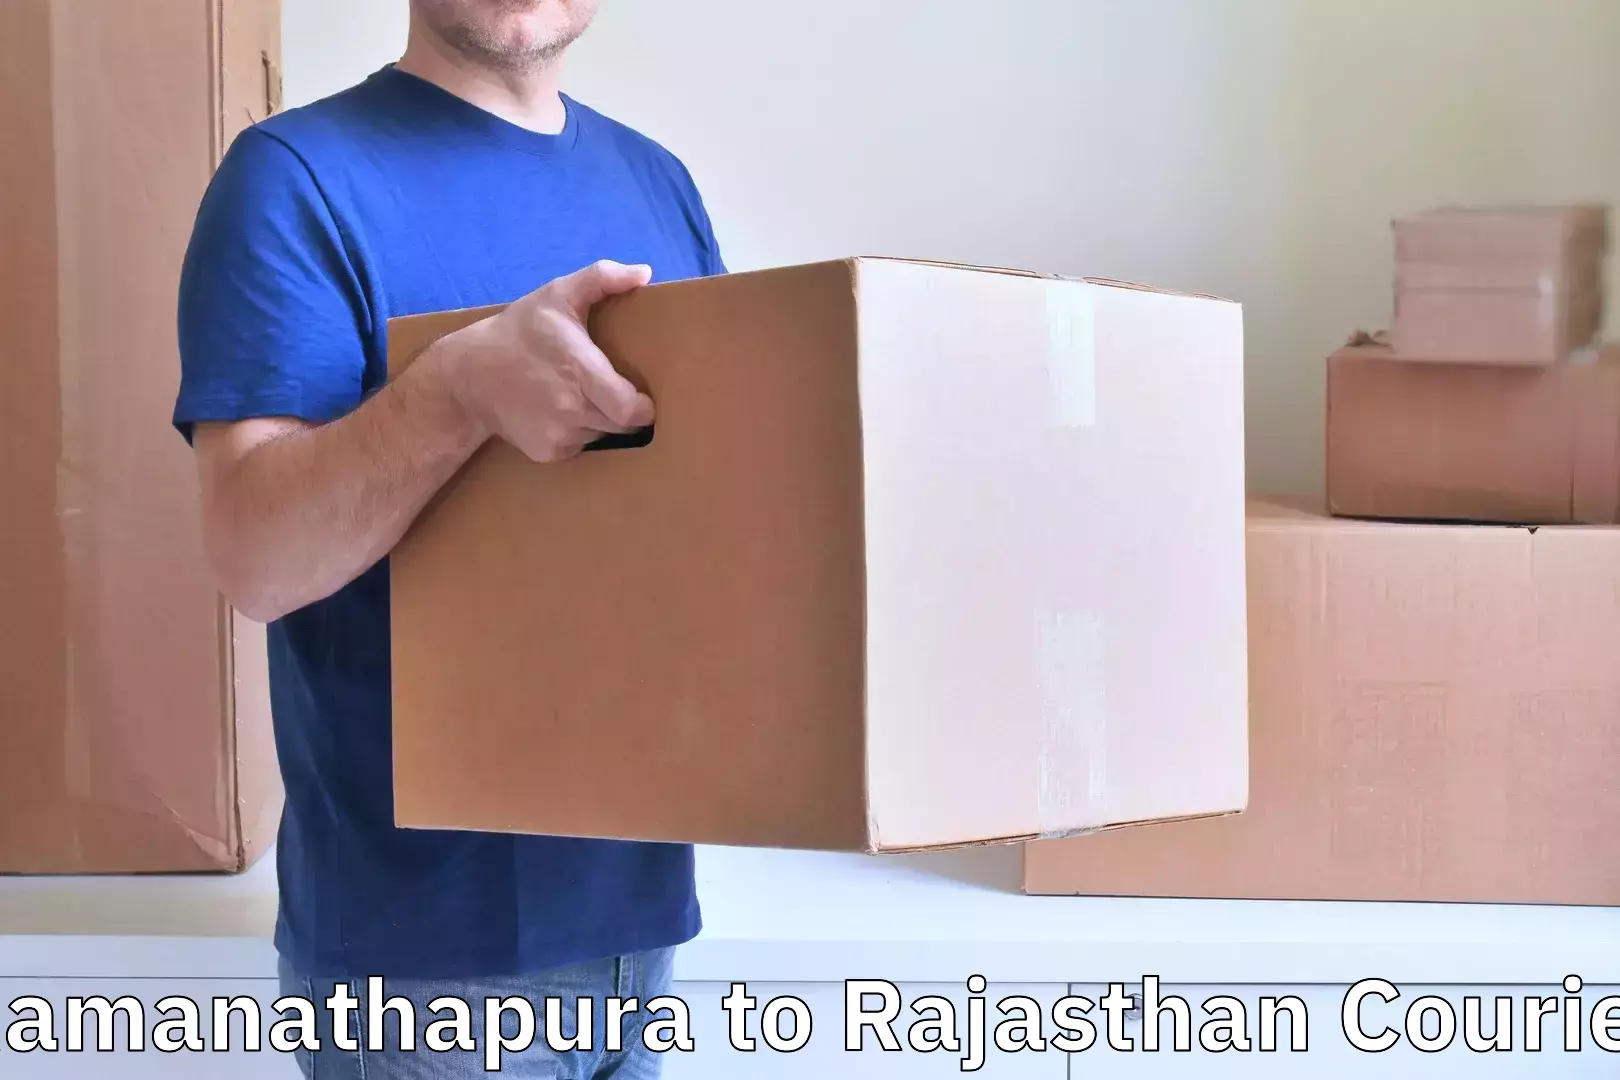 Baggage shipping experts Ramanathapura to Yathalakunta